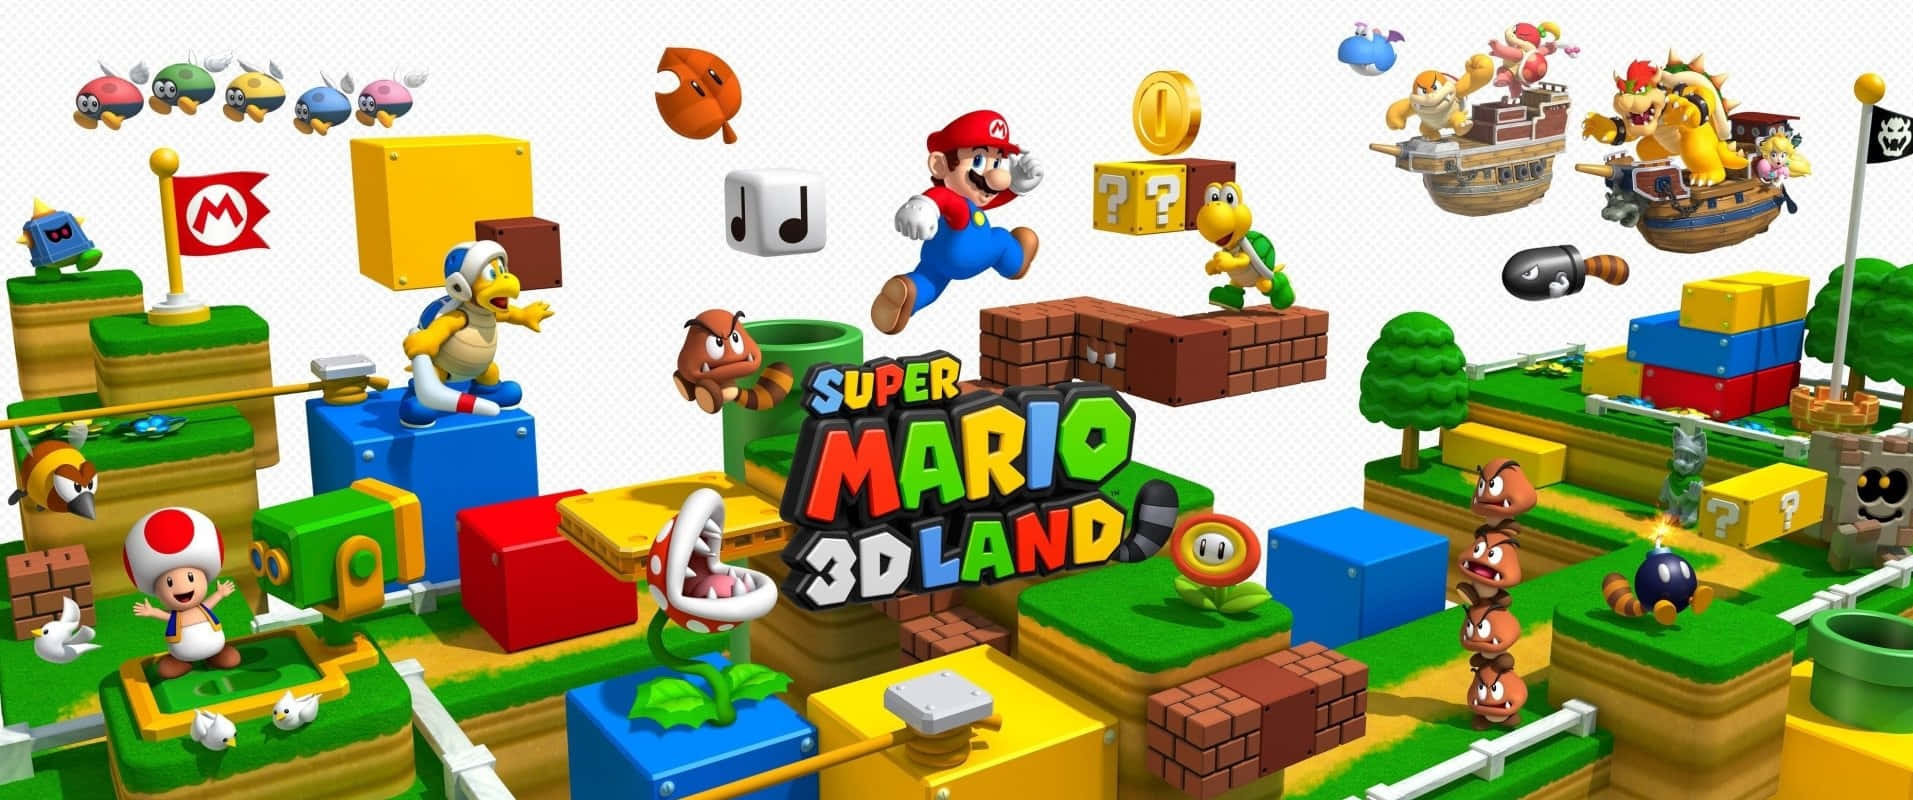 Super Mario 1913 X 800 Wallpaper